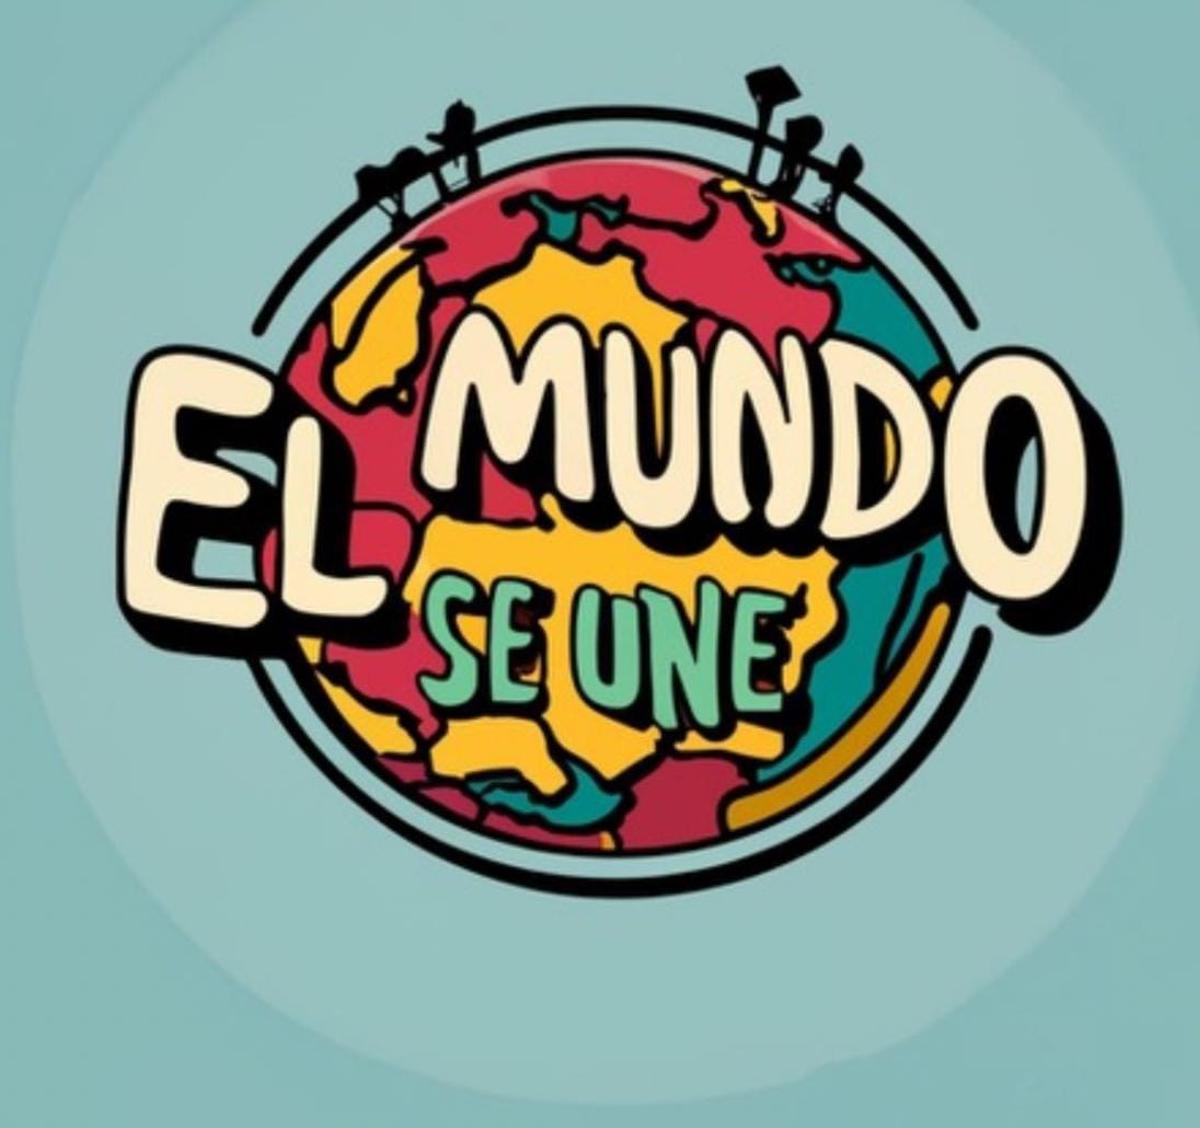 Logo del podcast El mundo se une, elaborado por el propio alumnado.